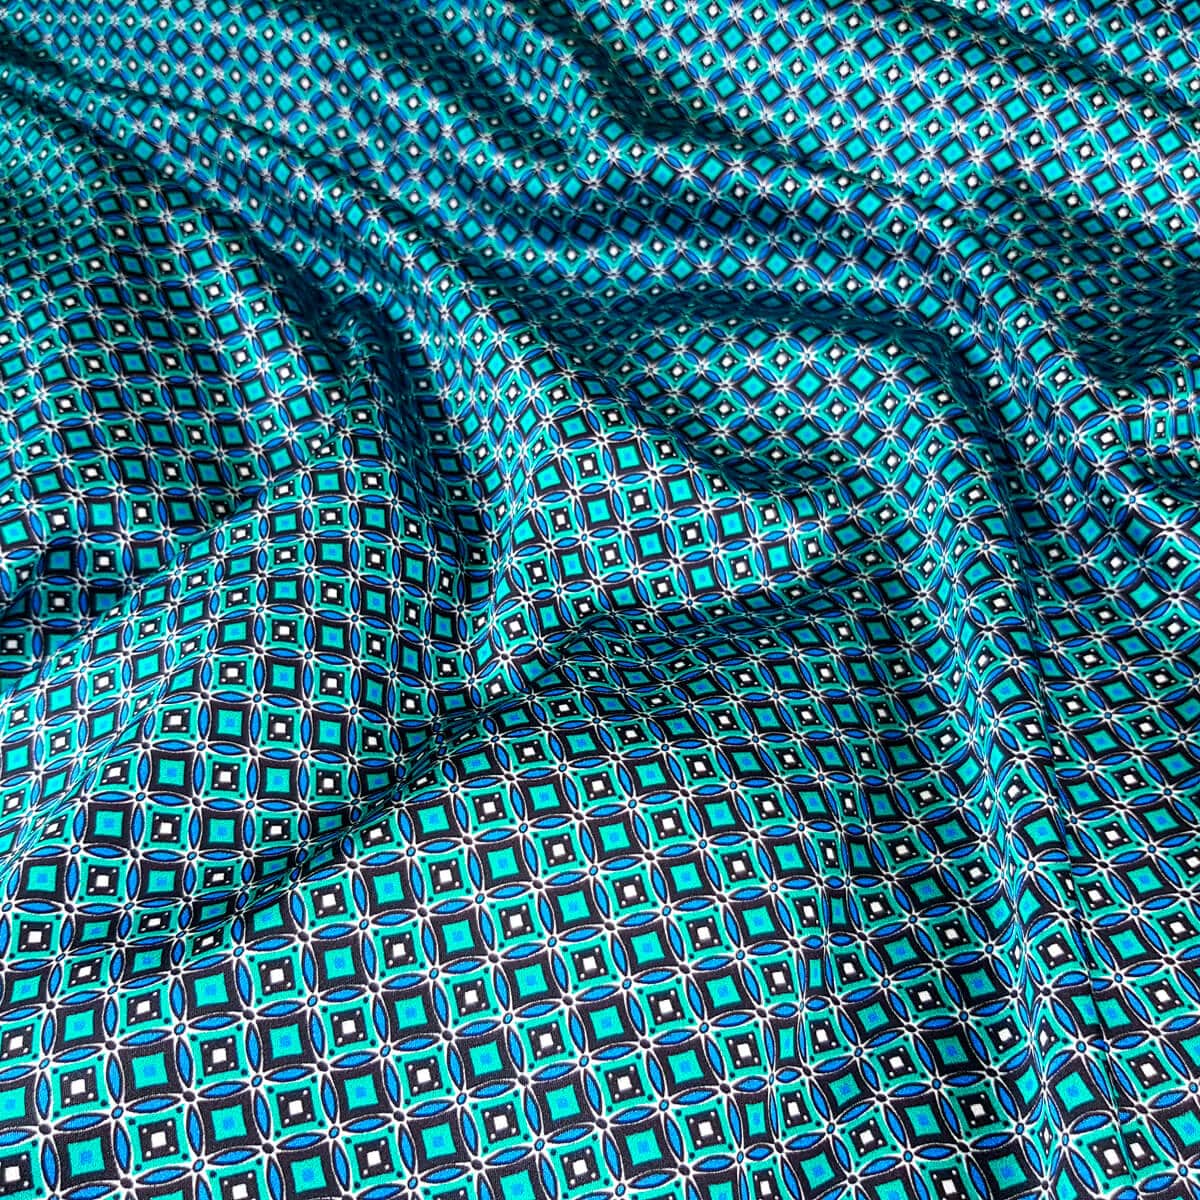 jedwabny material w drobne wzorki niebieski turkus satynaB